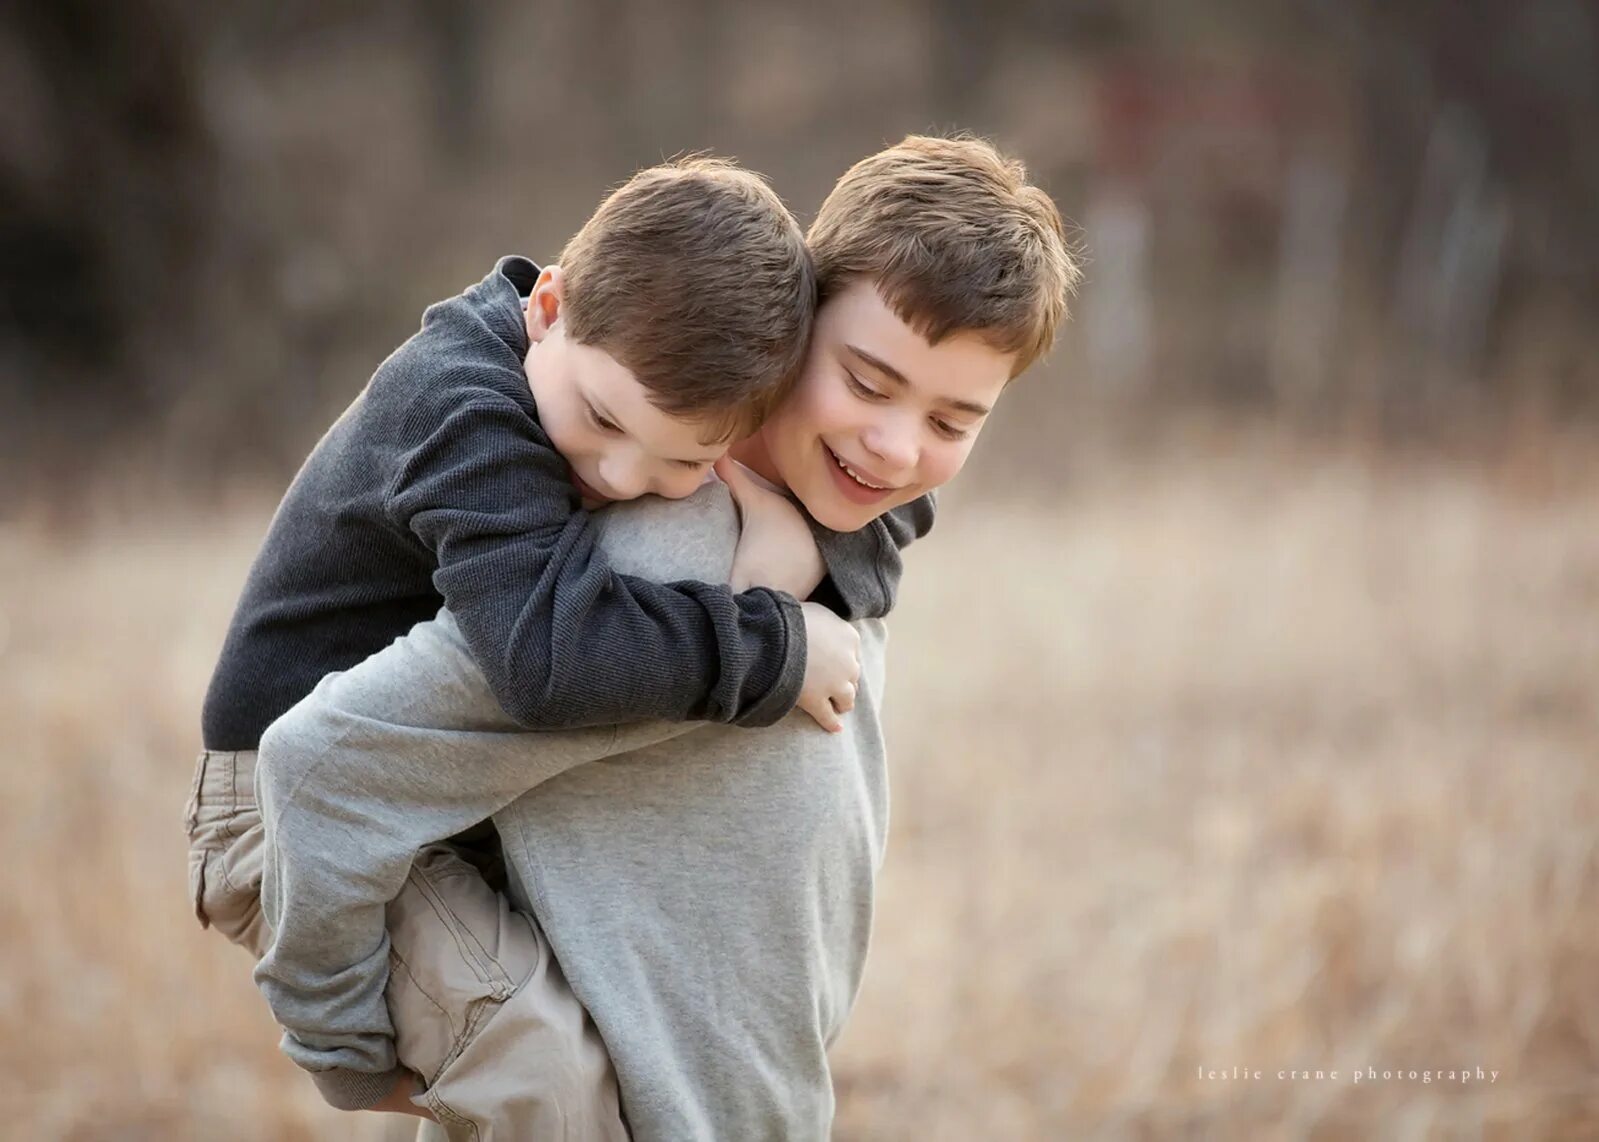 Мальчики обнимаются. Два пальчика обнимаются. Два мальчика. Два мальчика обнимаются.